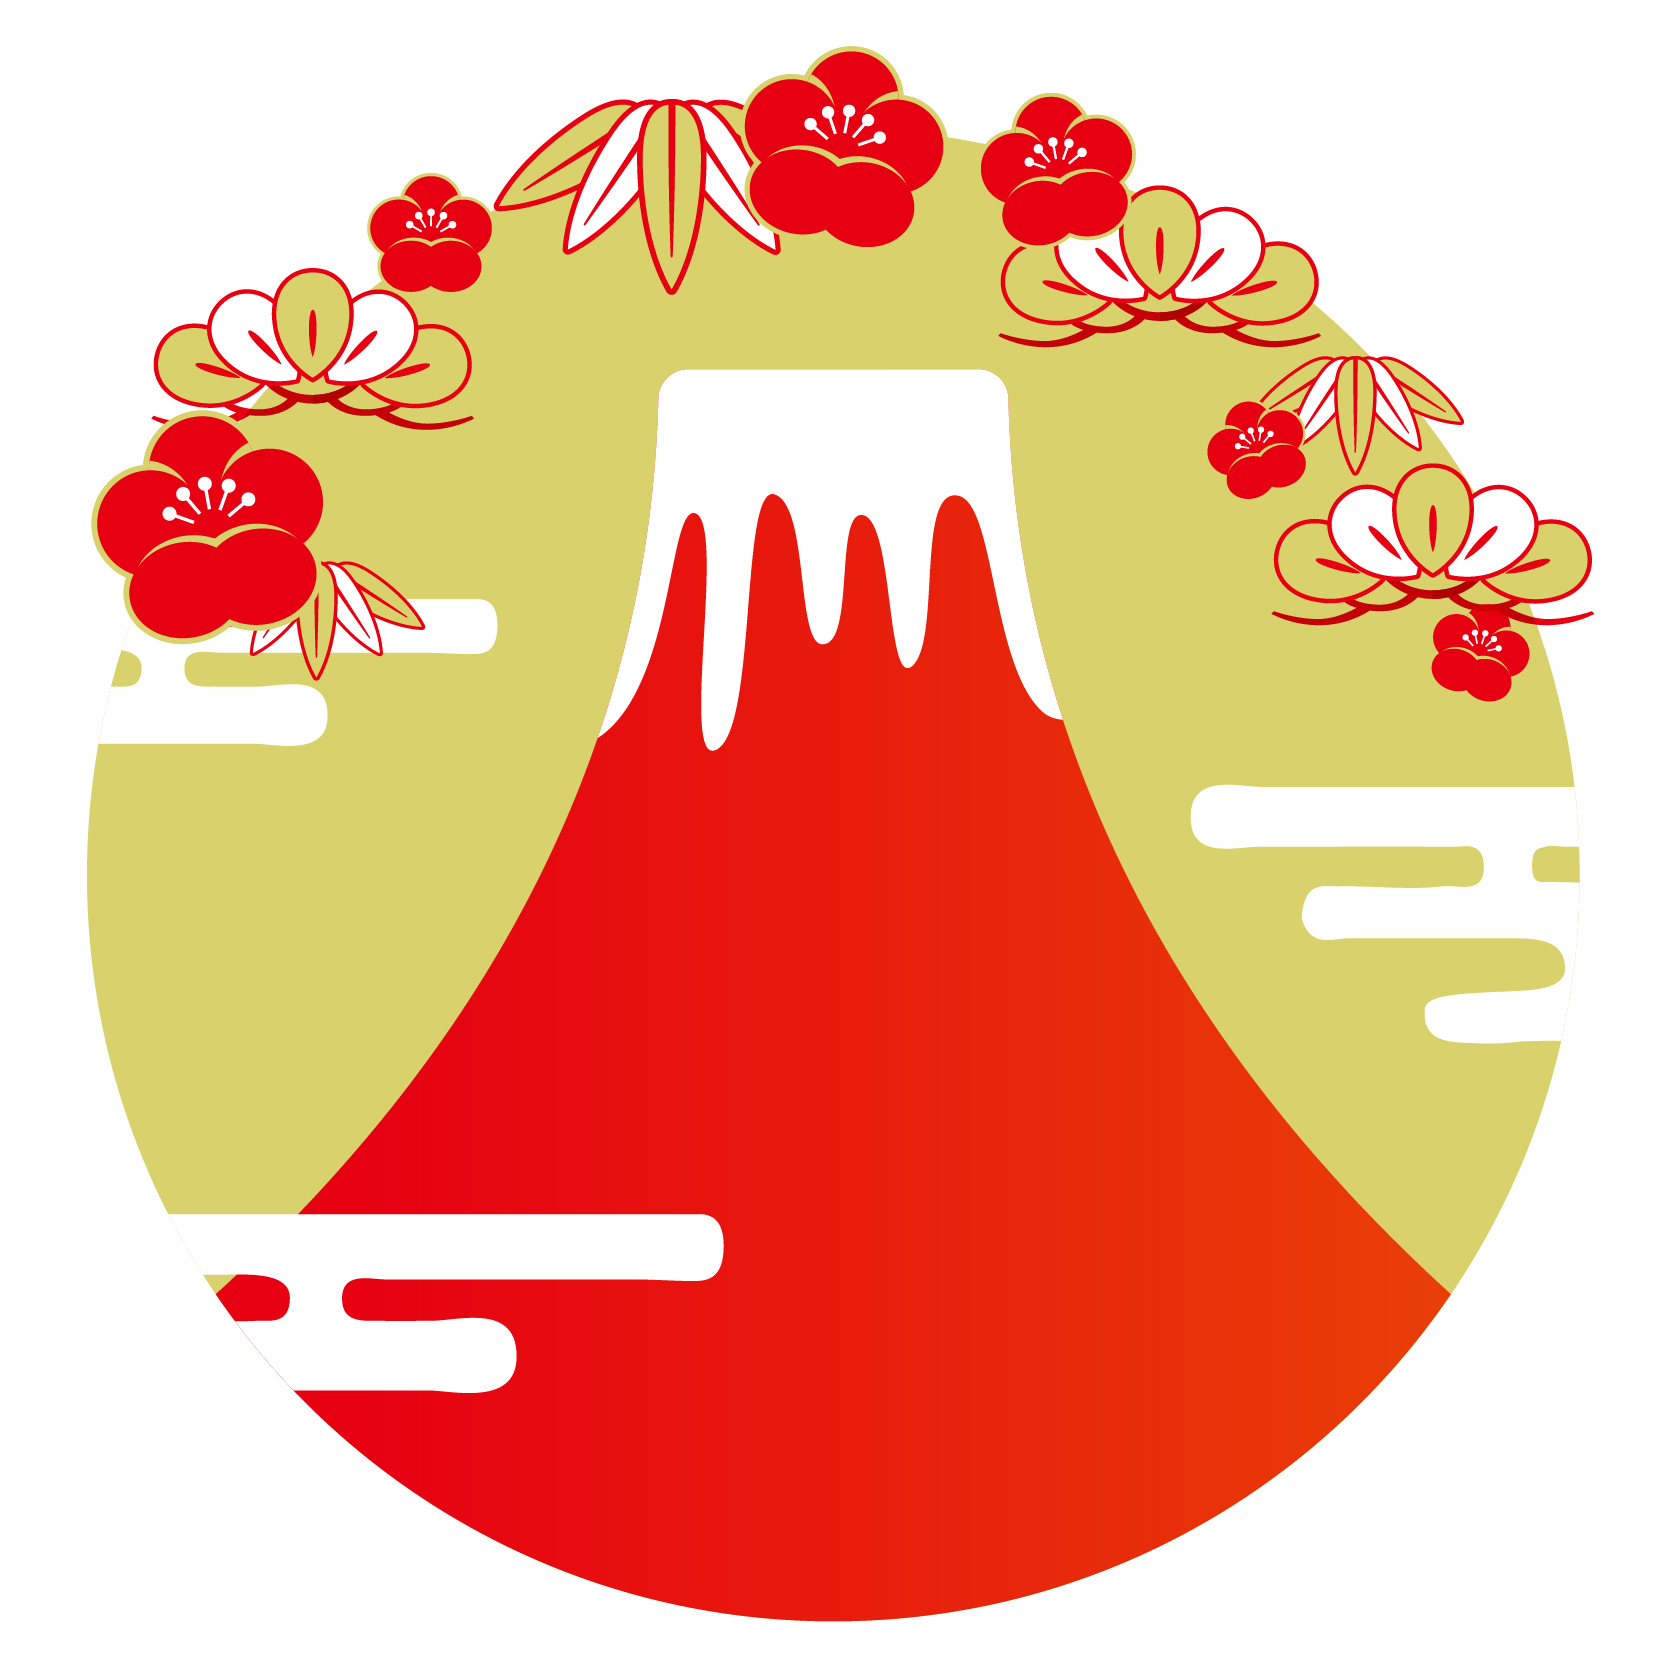 商用フリー 無料イラスト 富士山のイラスト 赤富士 Fujimountain001 商用ok フリー素材集 ナイスなイラスト